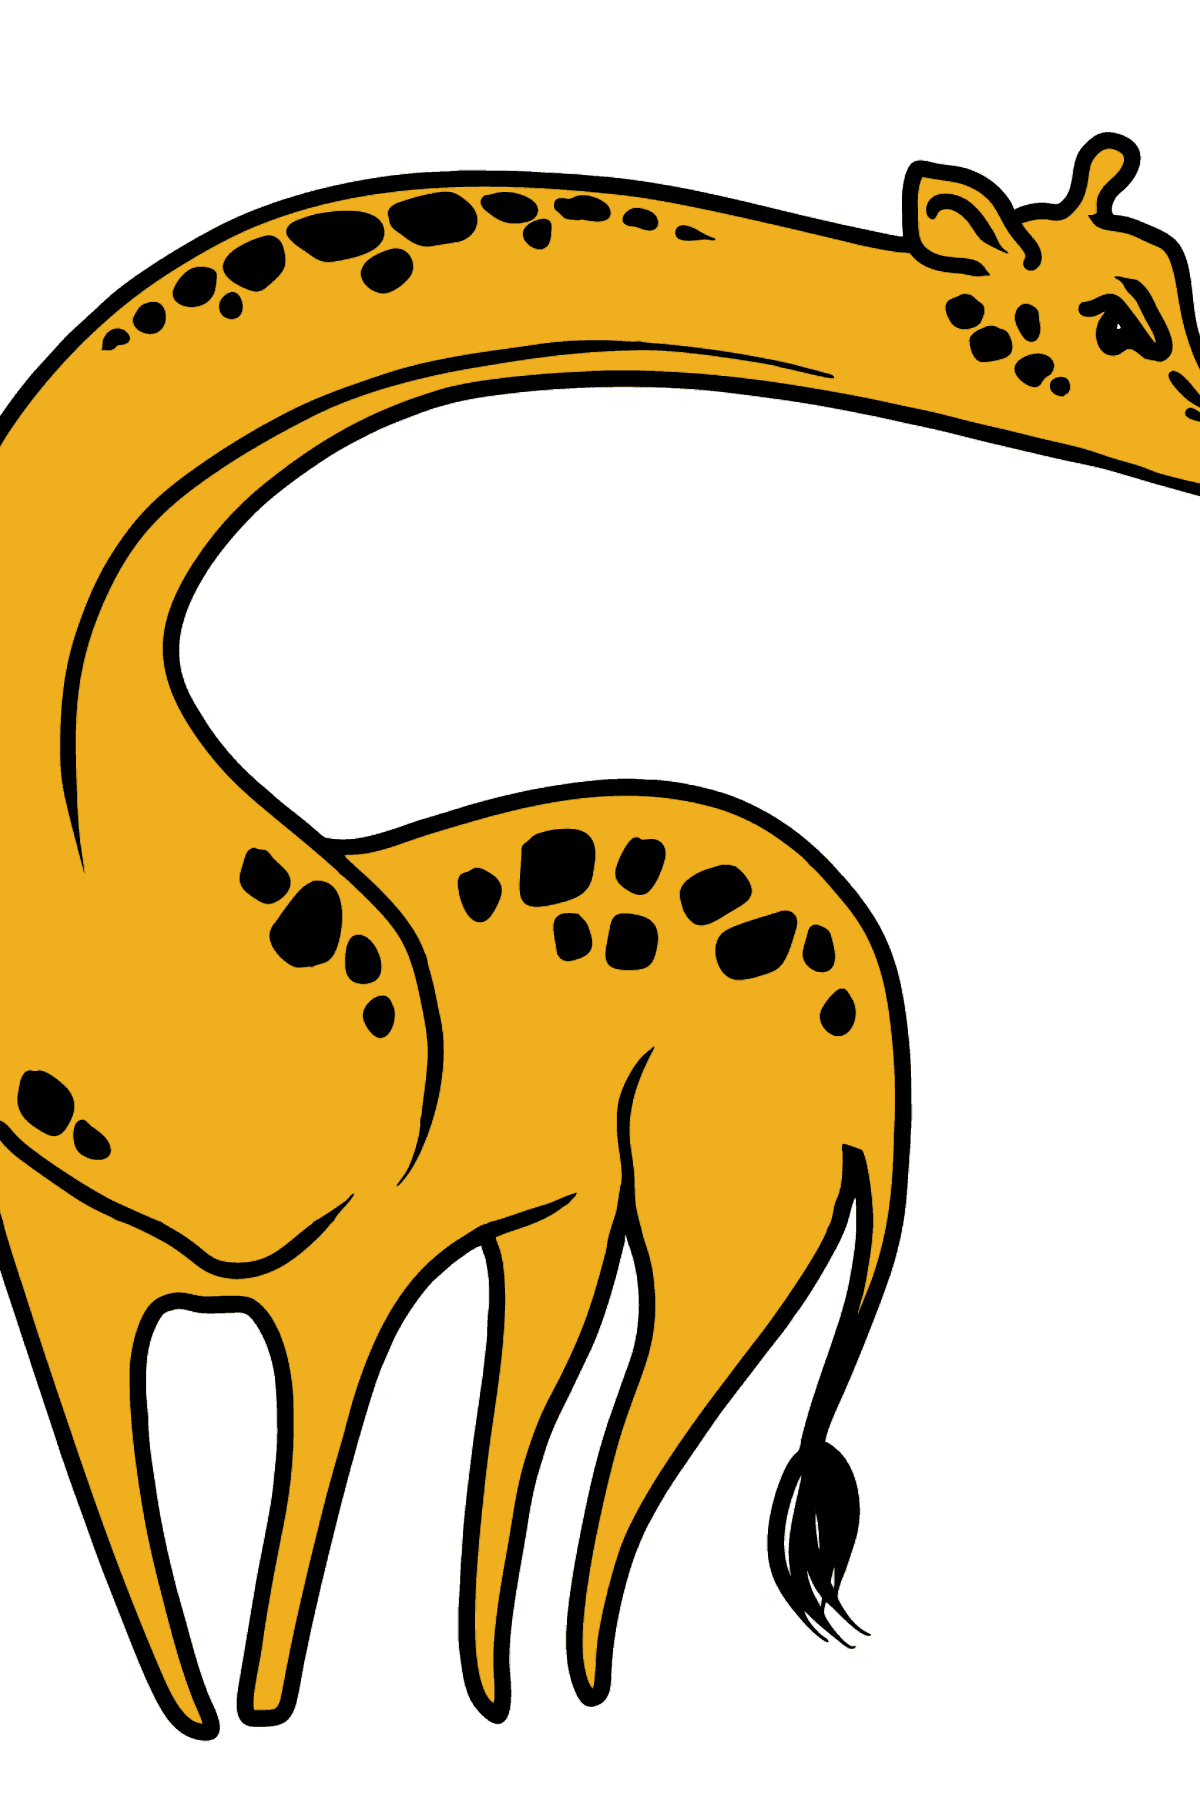 Dibujo de jirafa para colorear - Dibujos para Colorear para Niños